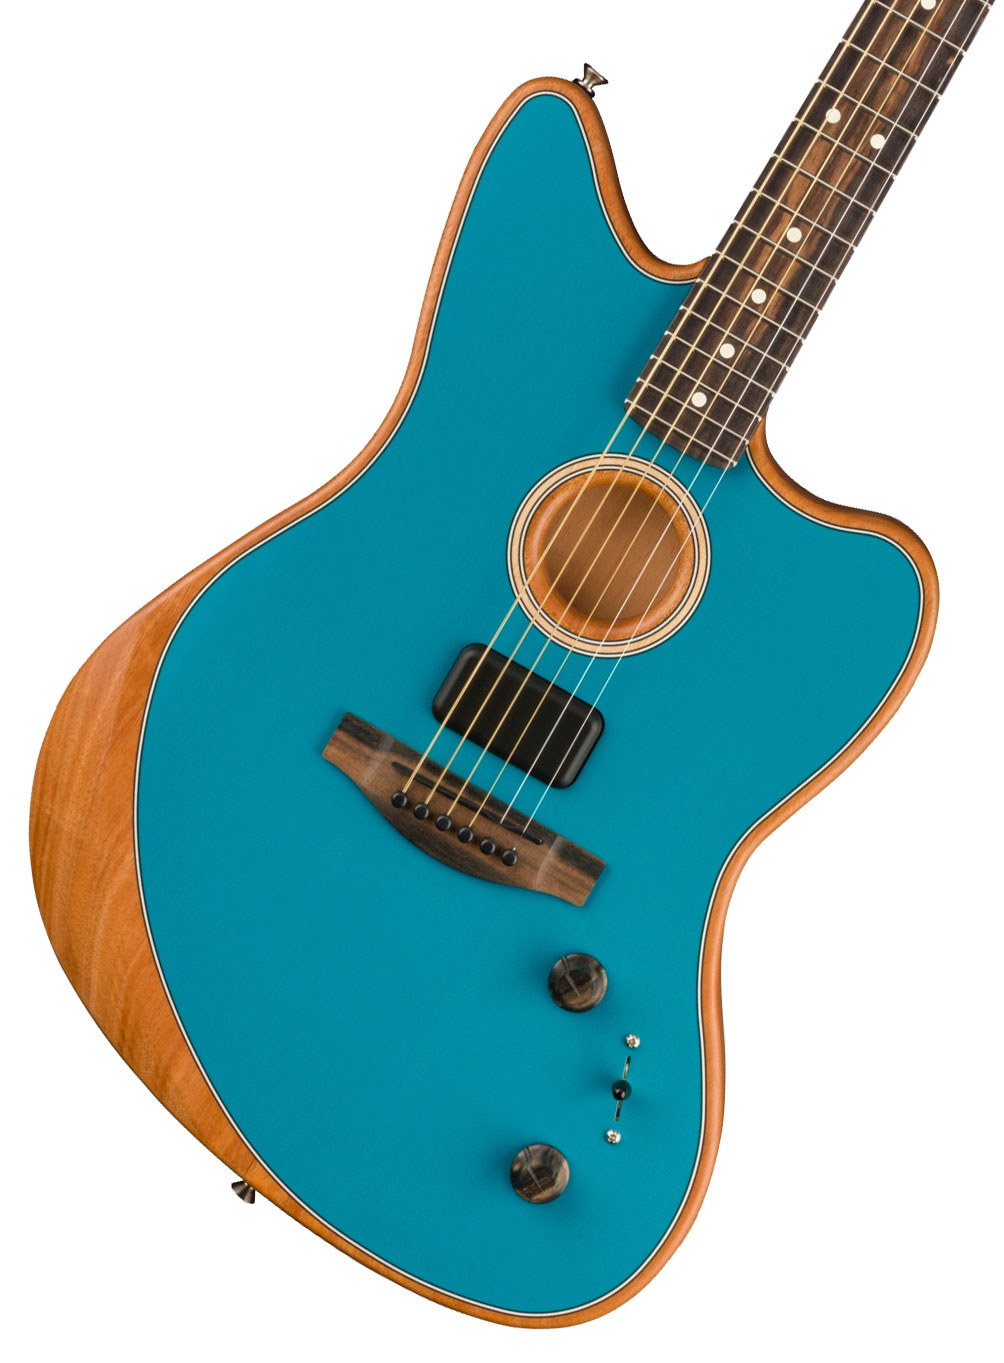 フェンダー Fender Acoustasonic Player Jazzmaster 2-Color Sunburst  エレクトリックアコースティックギター アコスタソニック ギター